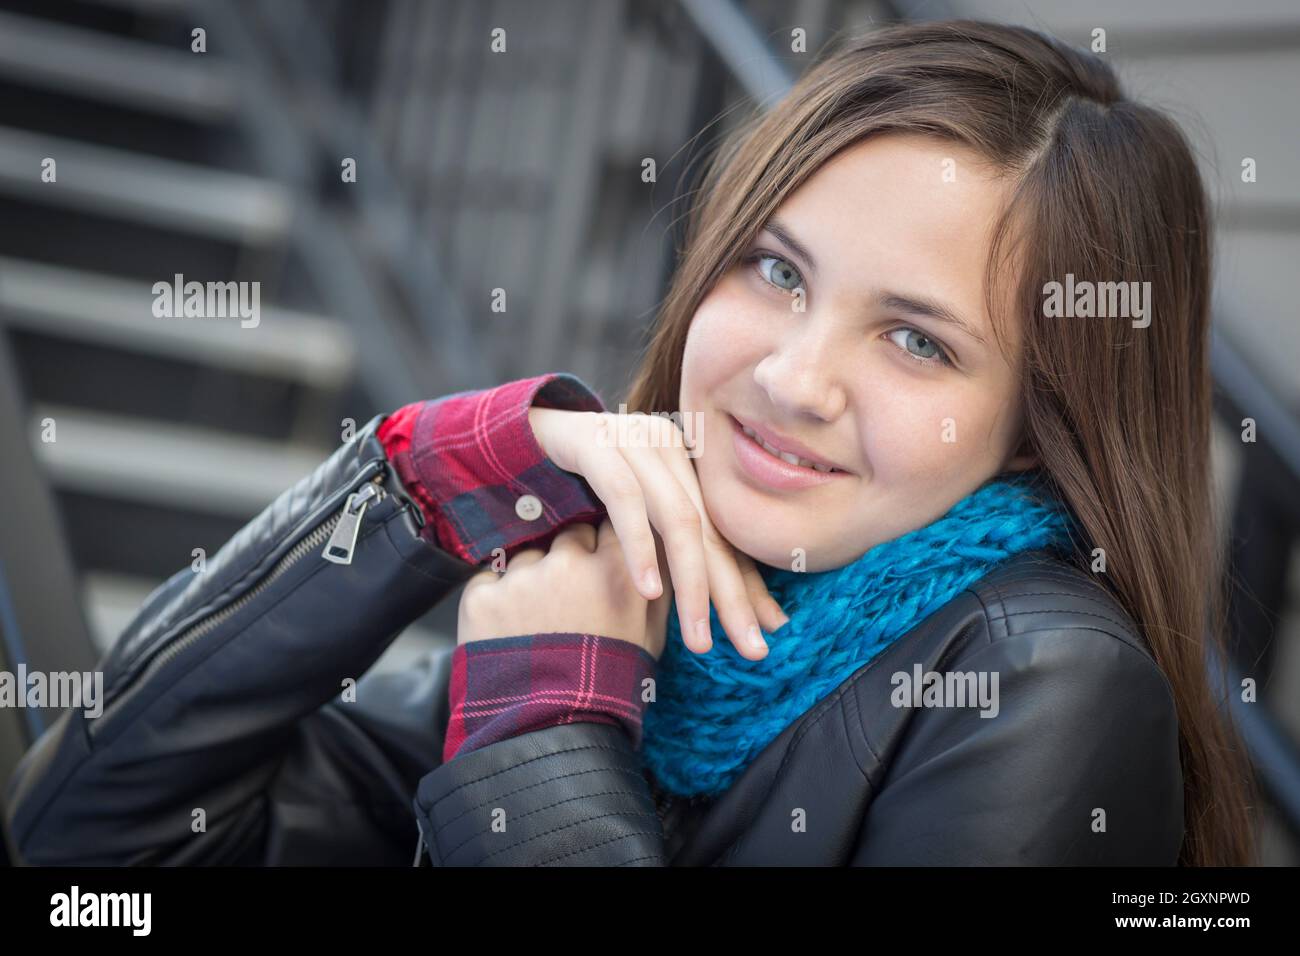 Teen Girl Wearing Leather Jacket